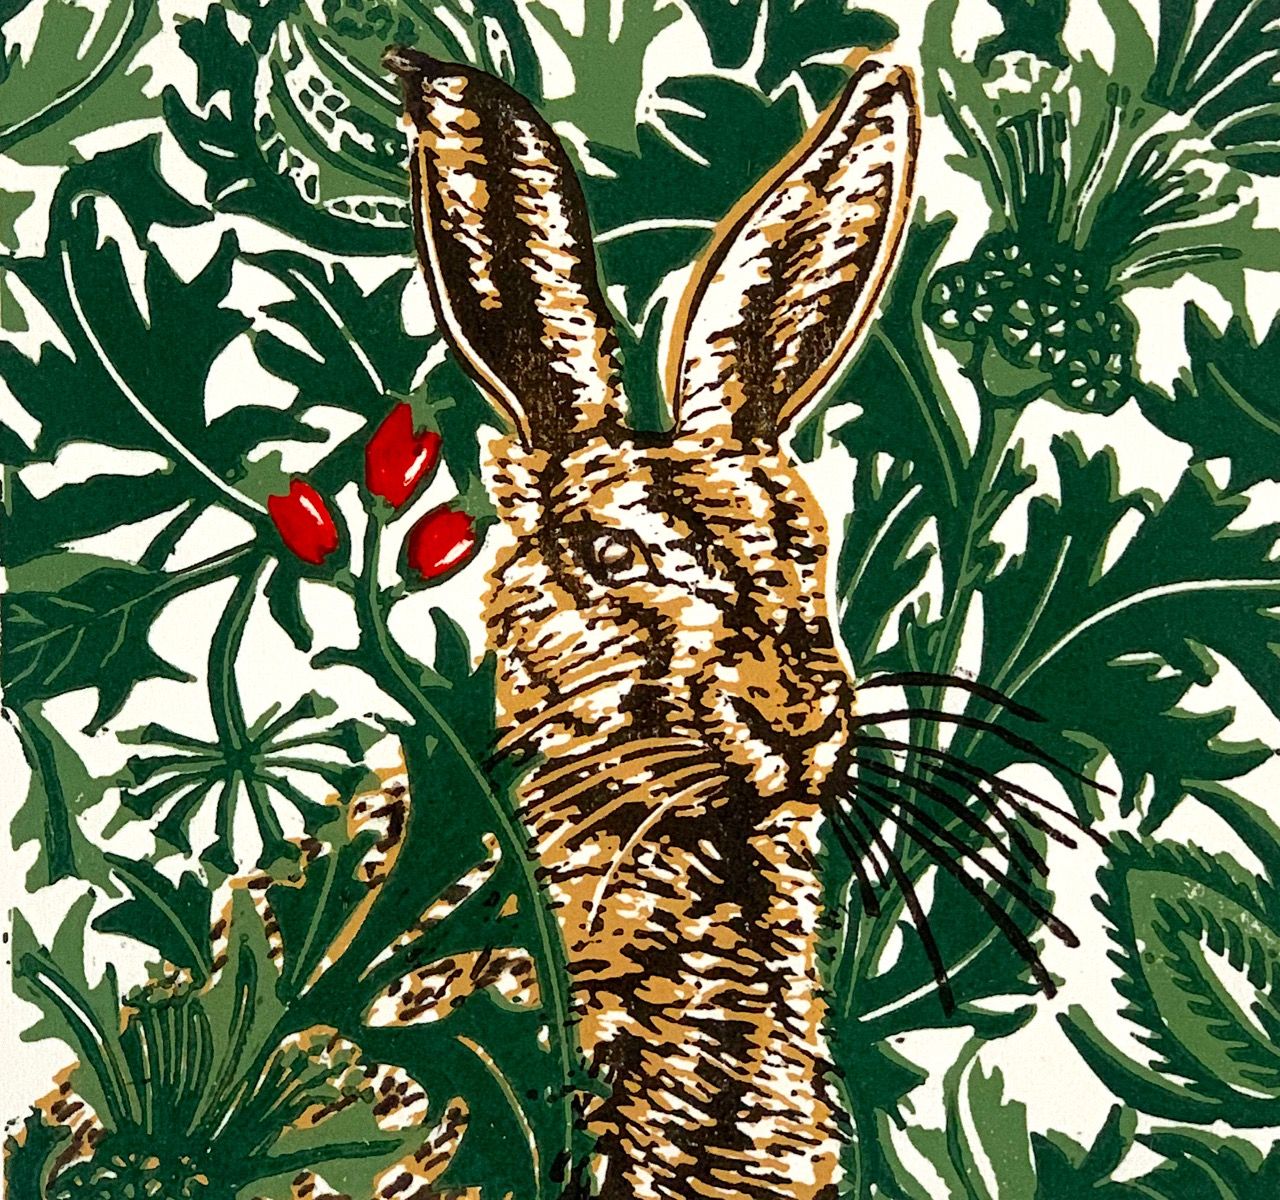 Winter Hare by Jennifer Jokhoo